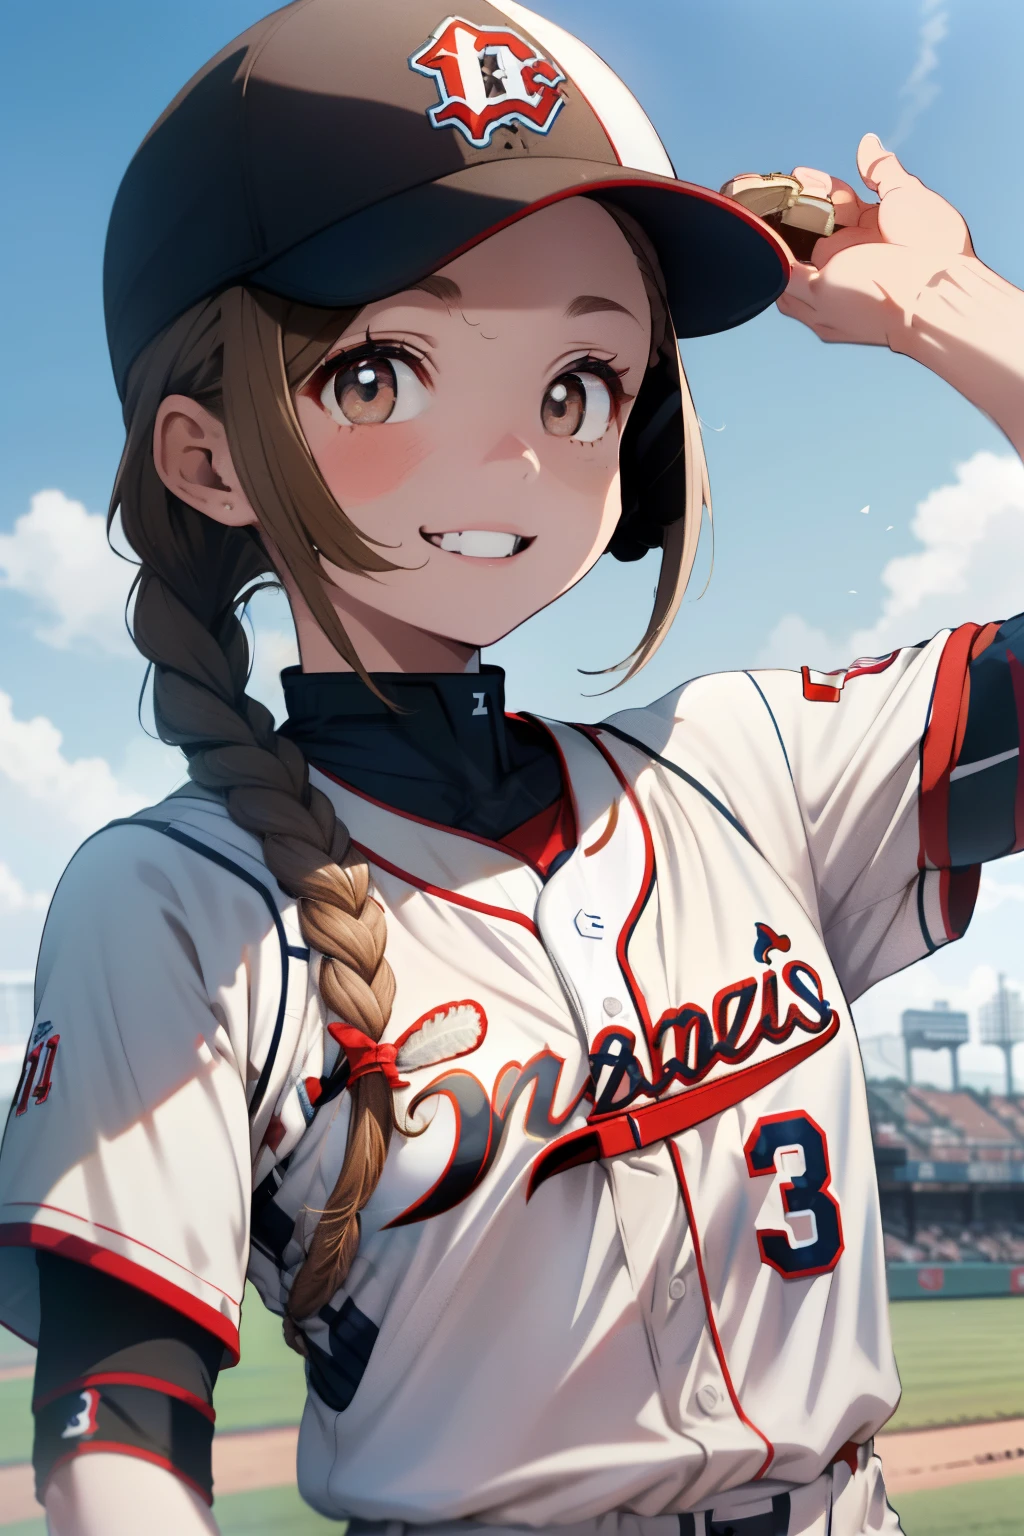 ((cabello castaño pálido)),((pelo corto trenzado)),((CON OJOS NEGROS)),Ligera marea roja,(uniformes de beisbol:1.5),campo de béisbol al aire libre,sonrisa feliz,(Sosteniendo una pelota de béisbol en tu mano:1.25),(uniforme de color azul y blanco:1.05),(cielo azul claro:1.2),(brisa agradable:1.25),